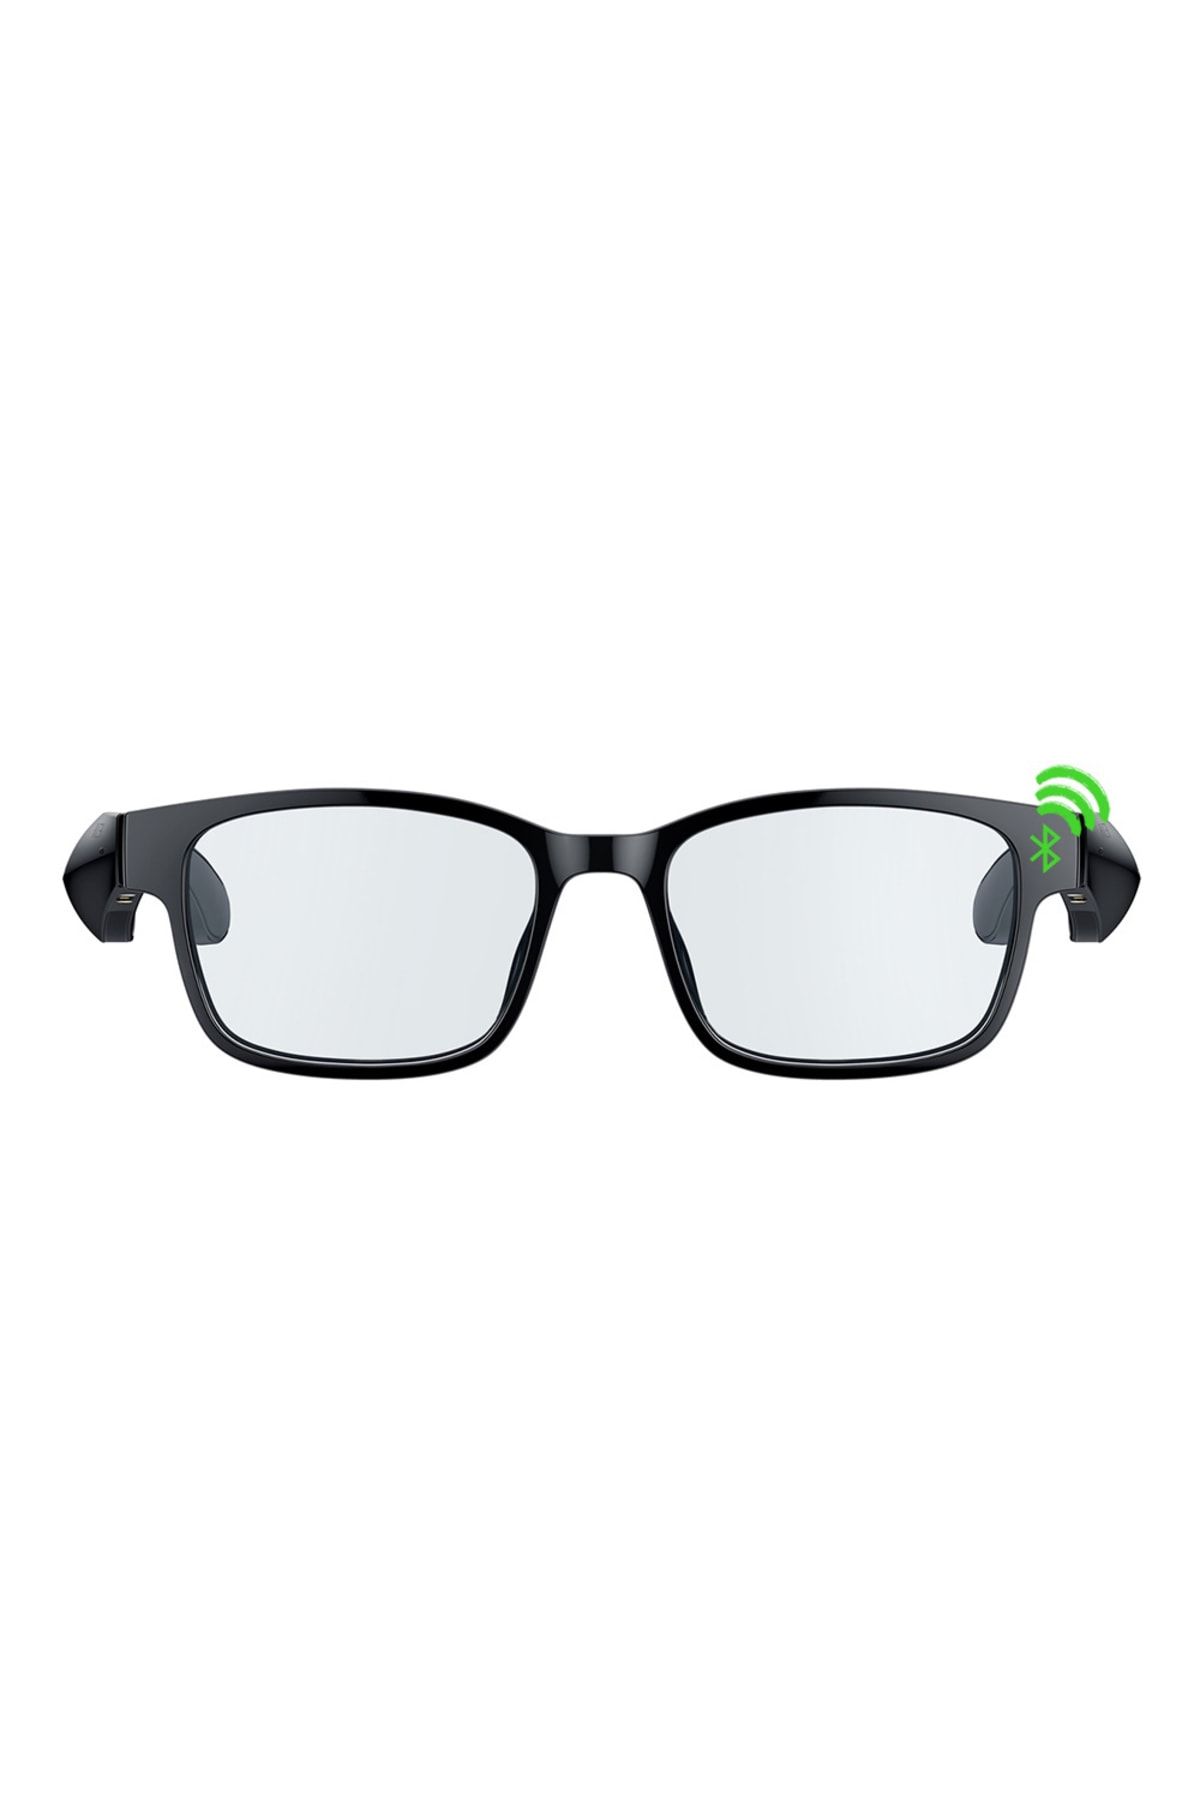 RAZER Anzu Dikdörtgen Mavi Işık Özellikli Large Akıllı Oyuncu Gözlüğü (rz82-03630200-r3m1)